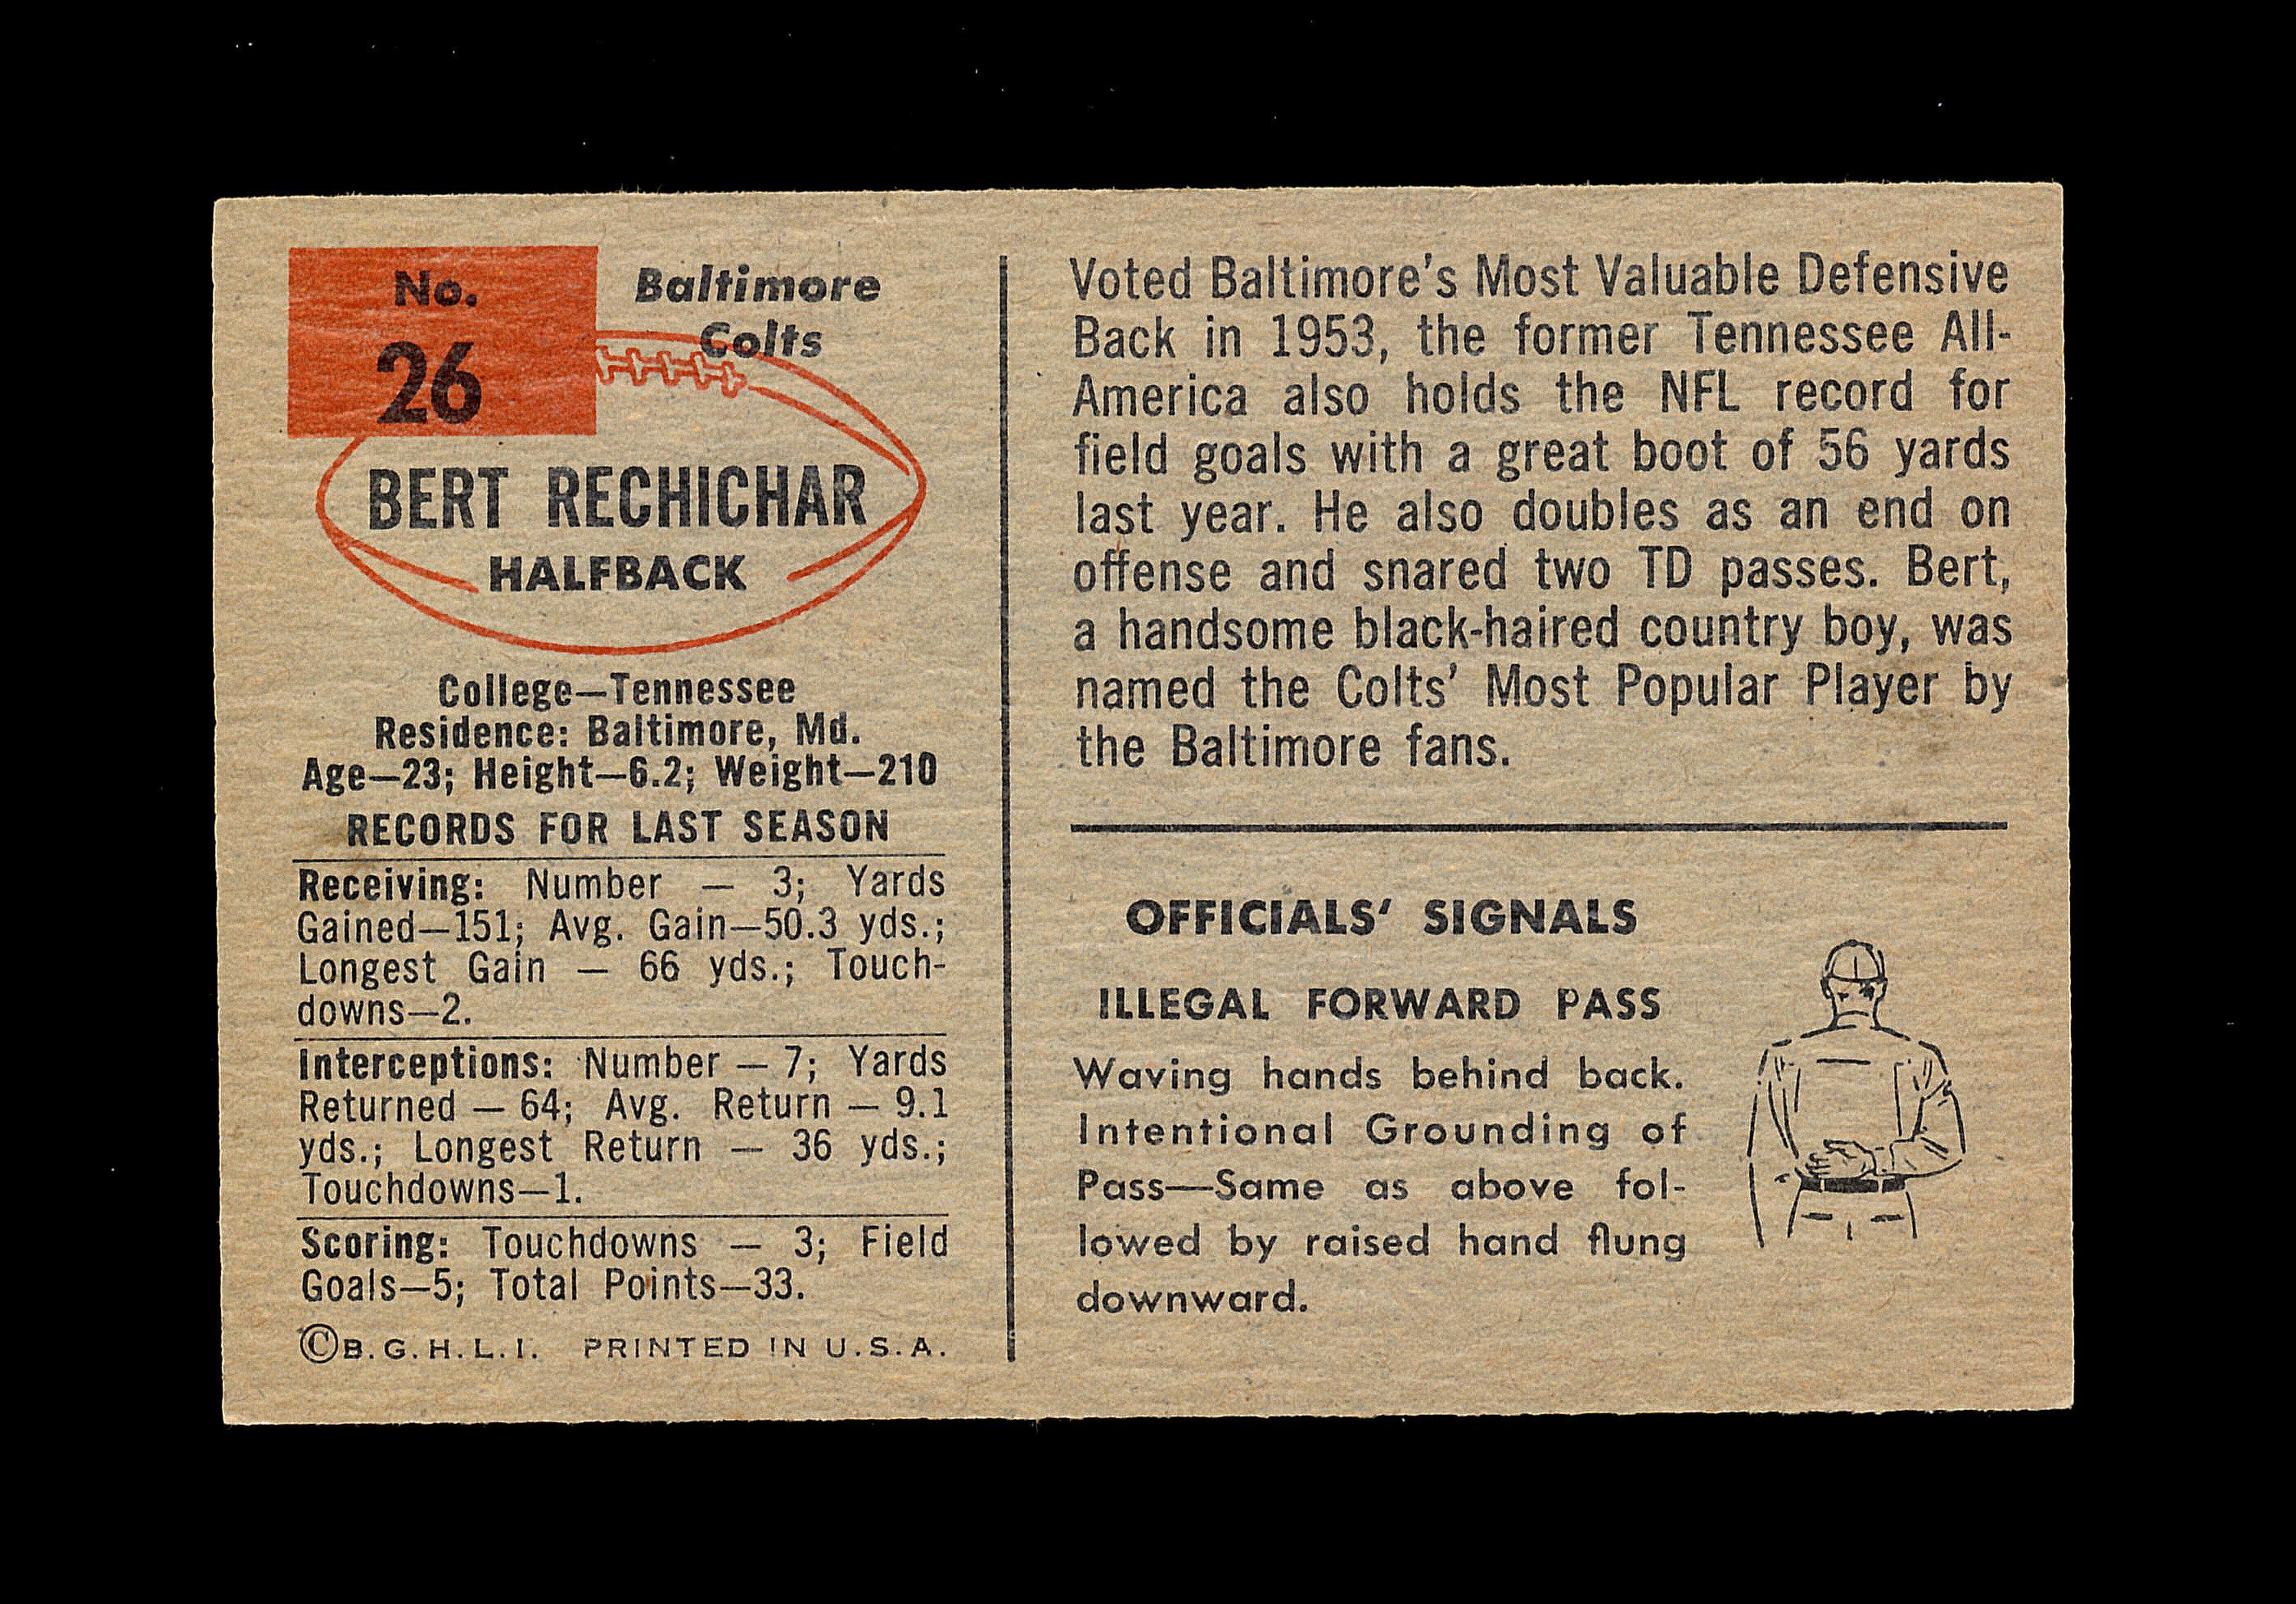 1954 Bowman Football Card #26 Bert Rechichar Baltimore Colts.